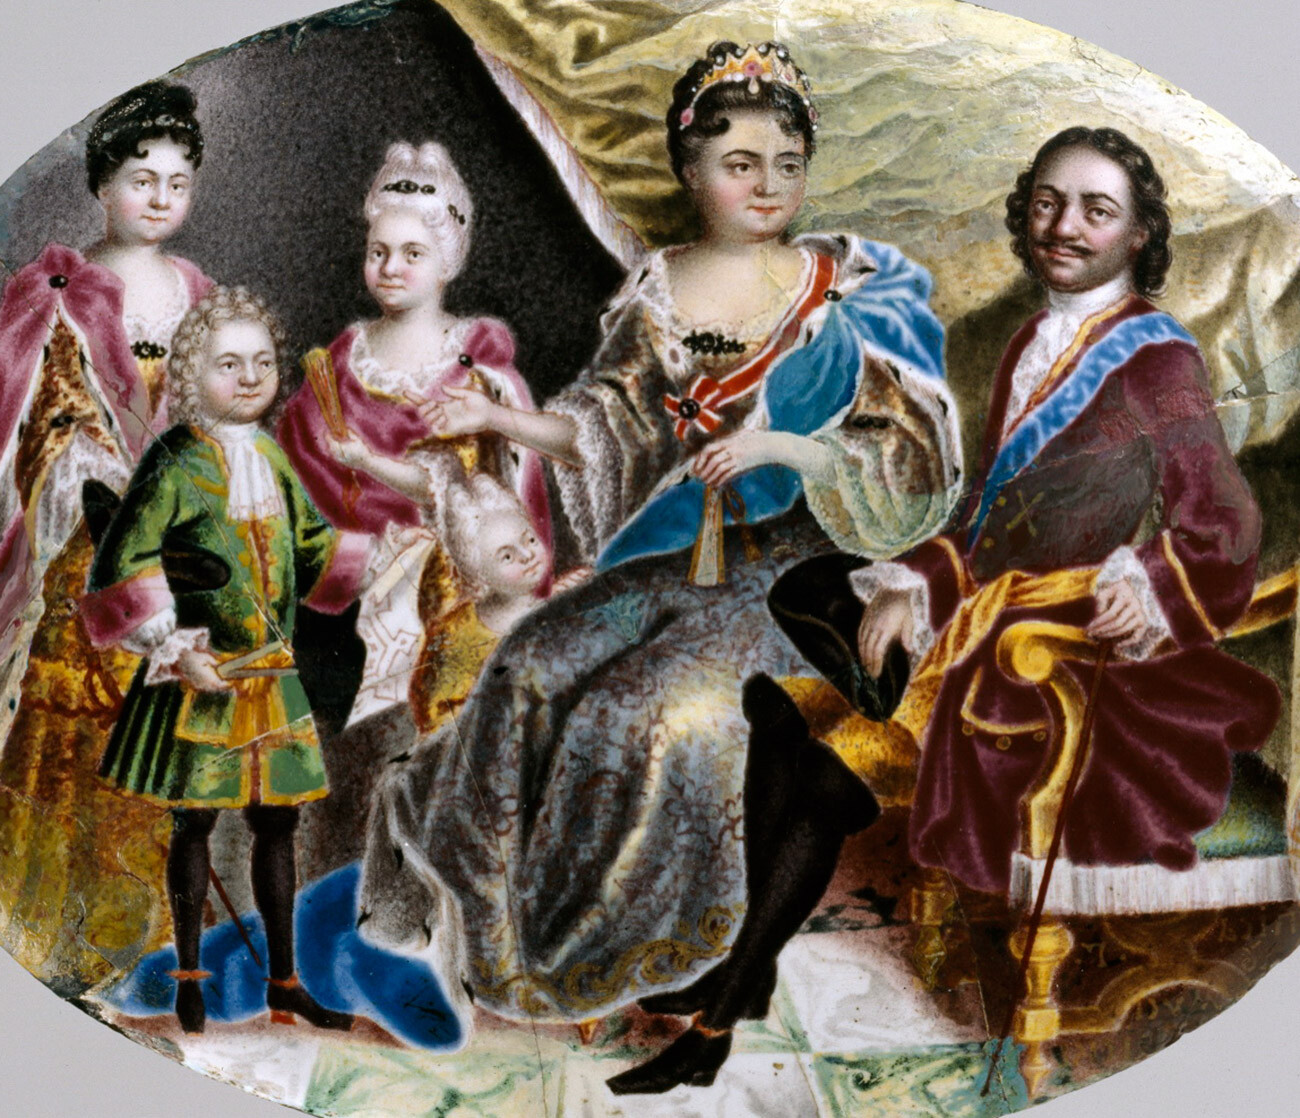 Pedro el Grande representado junto a su esposa Catalina, sus tres hijas Ana, Isabel y Natalia, y su nieto Pedro